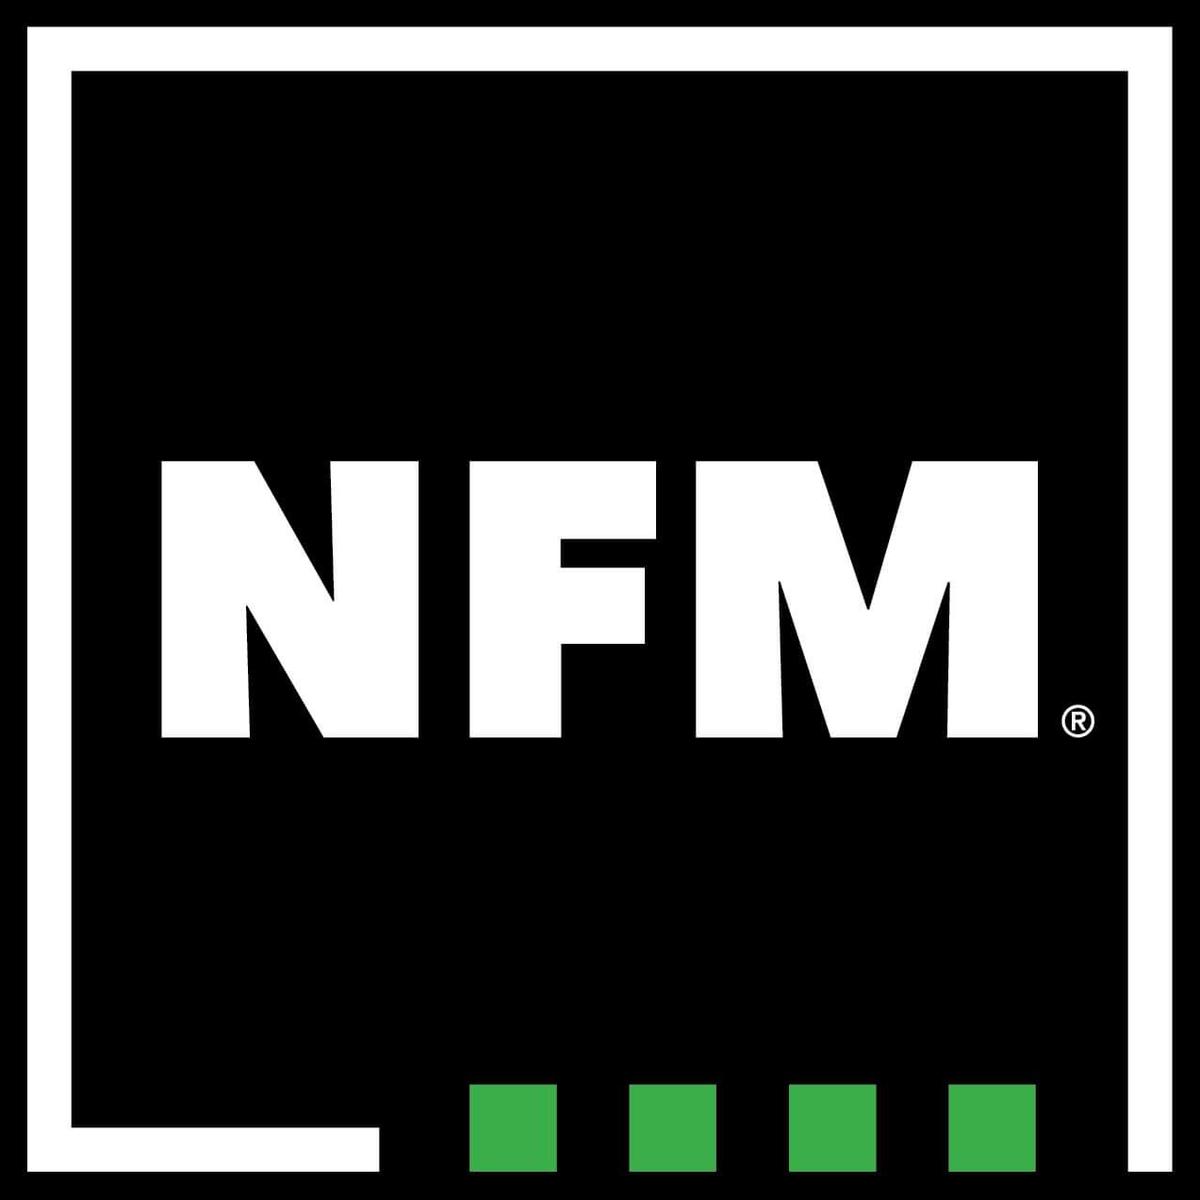 NFM's images